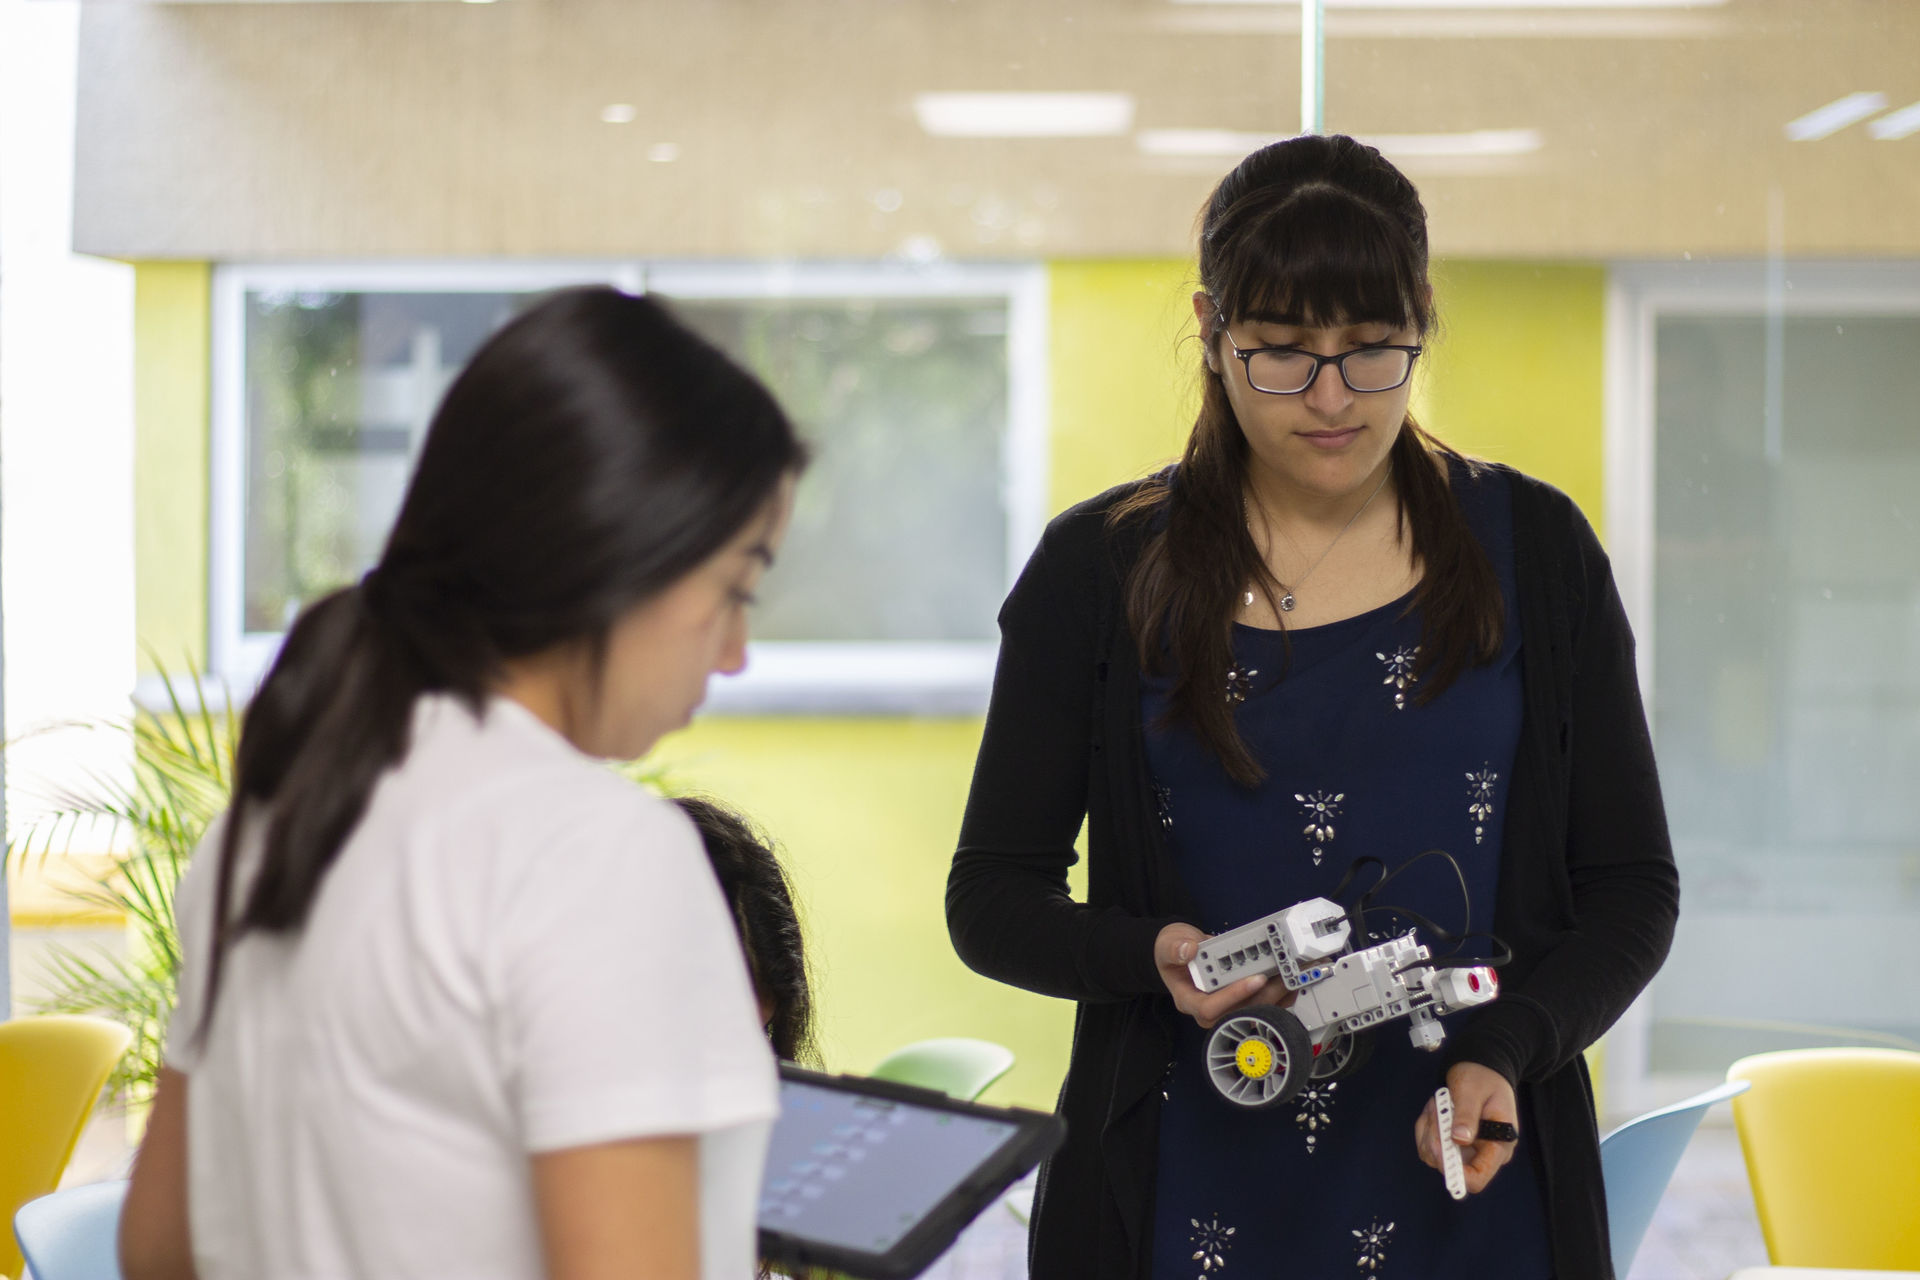 Gracias al TEC campus Veracruz y en colaboración con el programa Global Teaching Labs del MIT, Meghana y Aliza, son ahora miembros de ambas universidades.